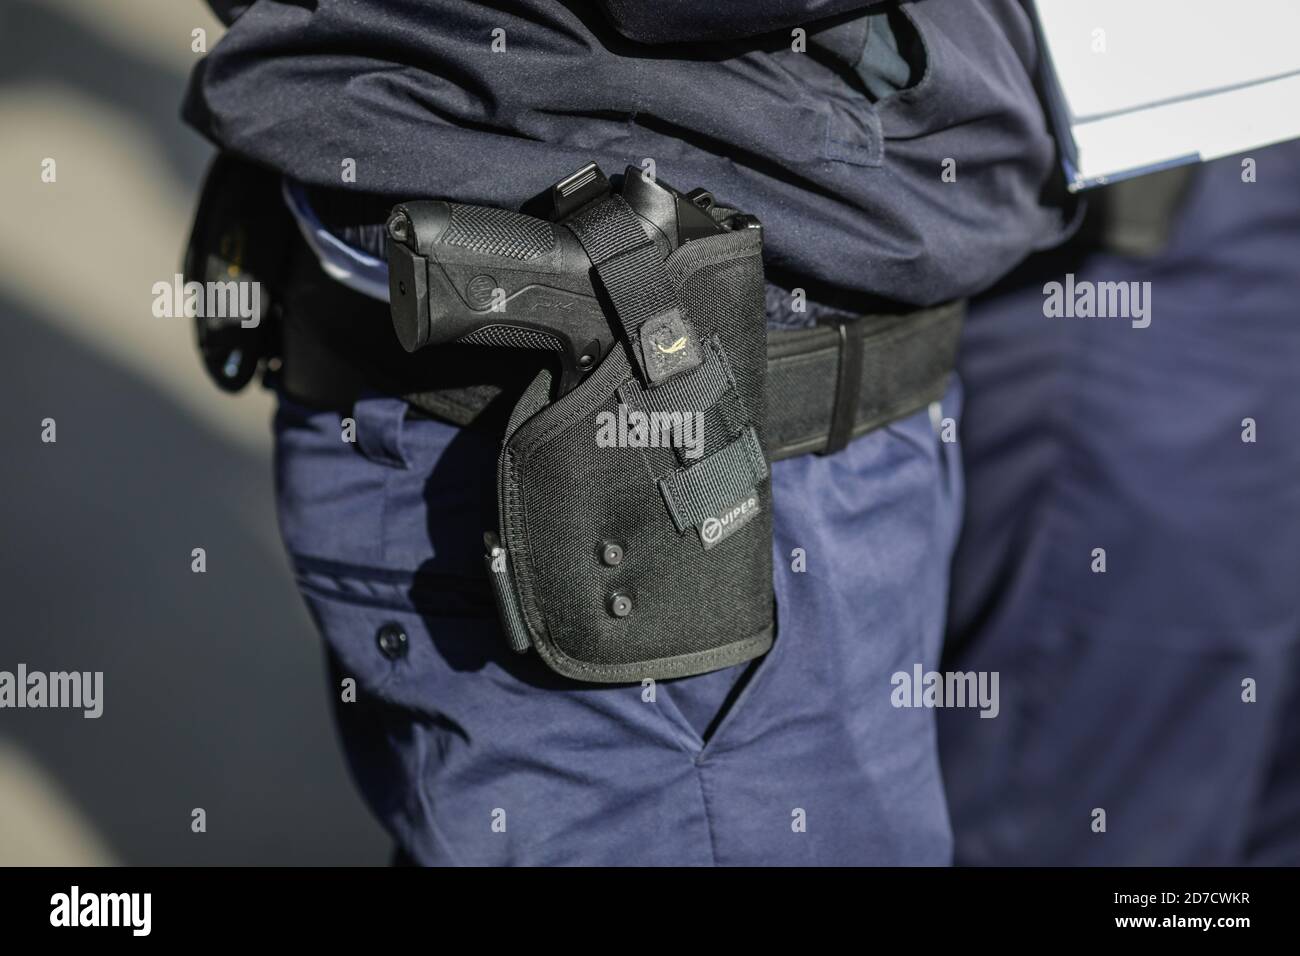 Bucarest, Romania - 21 ottobre 2020: Dettagli con una pistola Beretta PX4 nella custodia di un ufficiale di polizia. Foto Stock